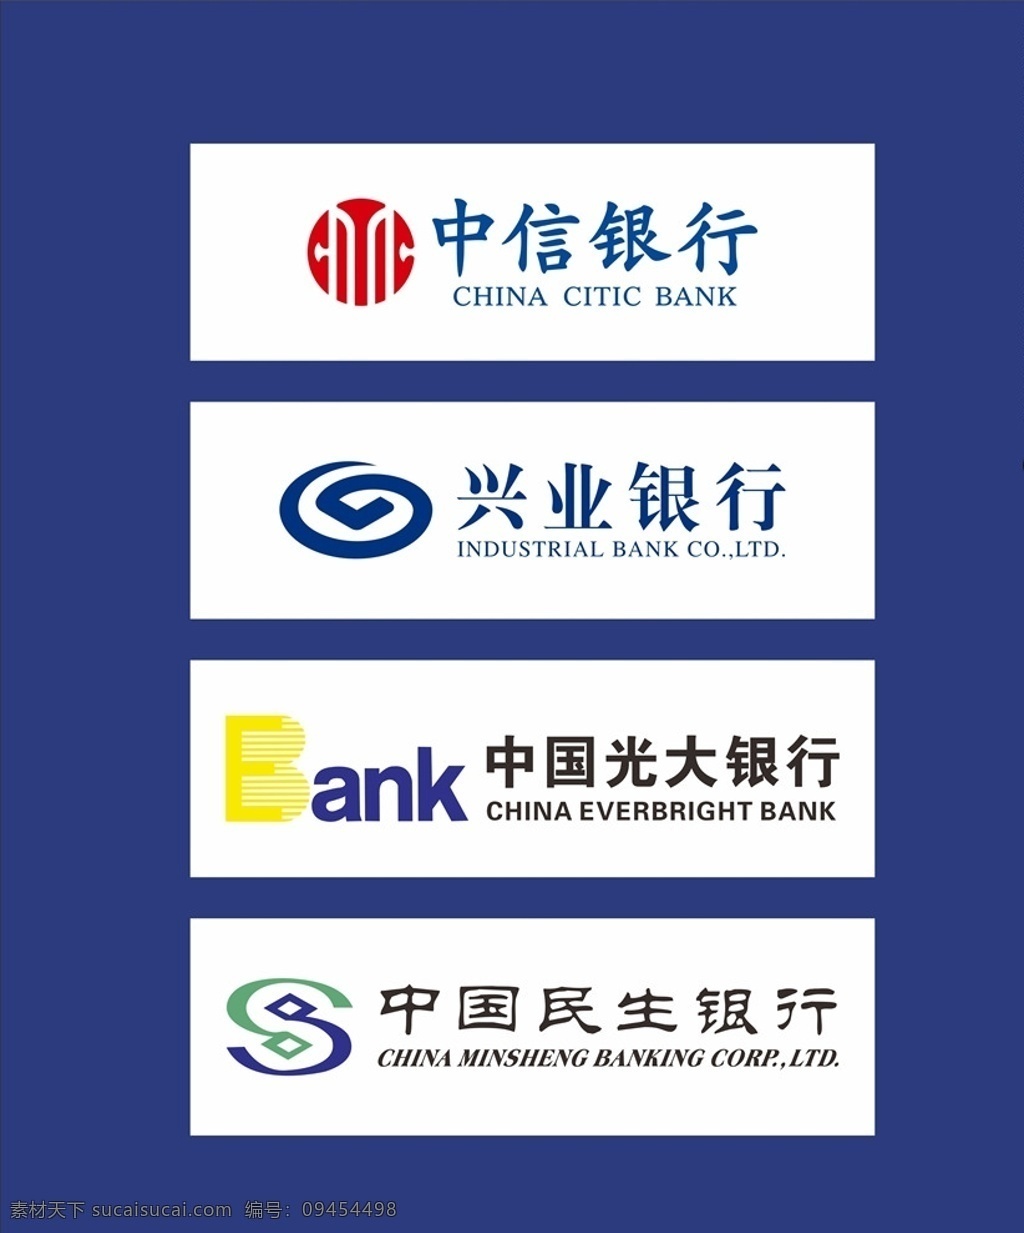 中信银行 兴业银行 光大银行 民生银行 logo 标志 金融 合作 银行 公共标识标志 元素 标志图标 企业